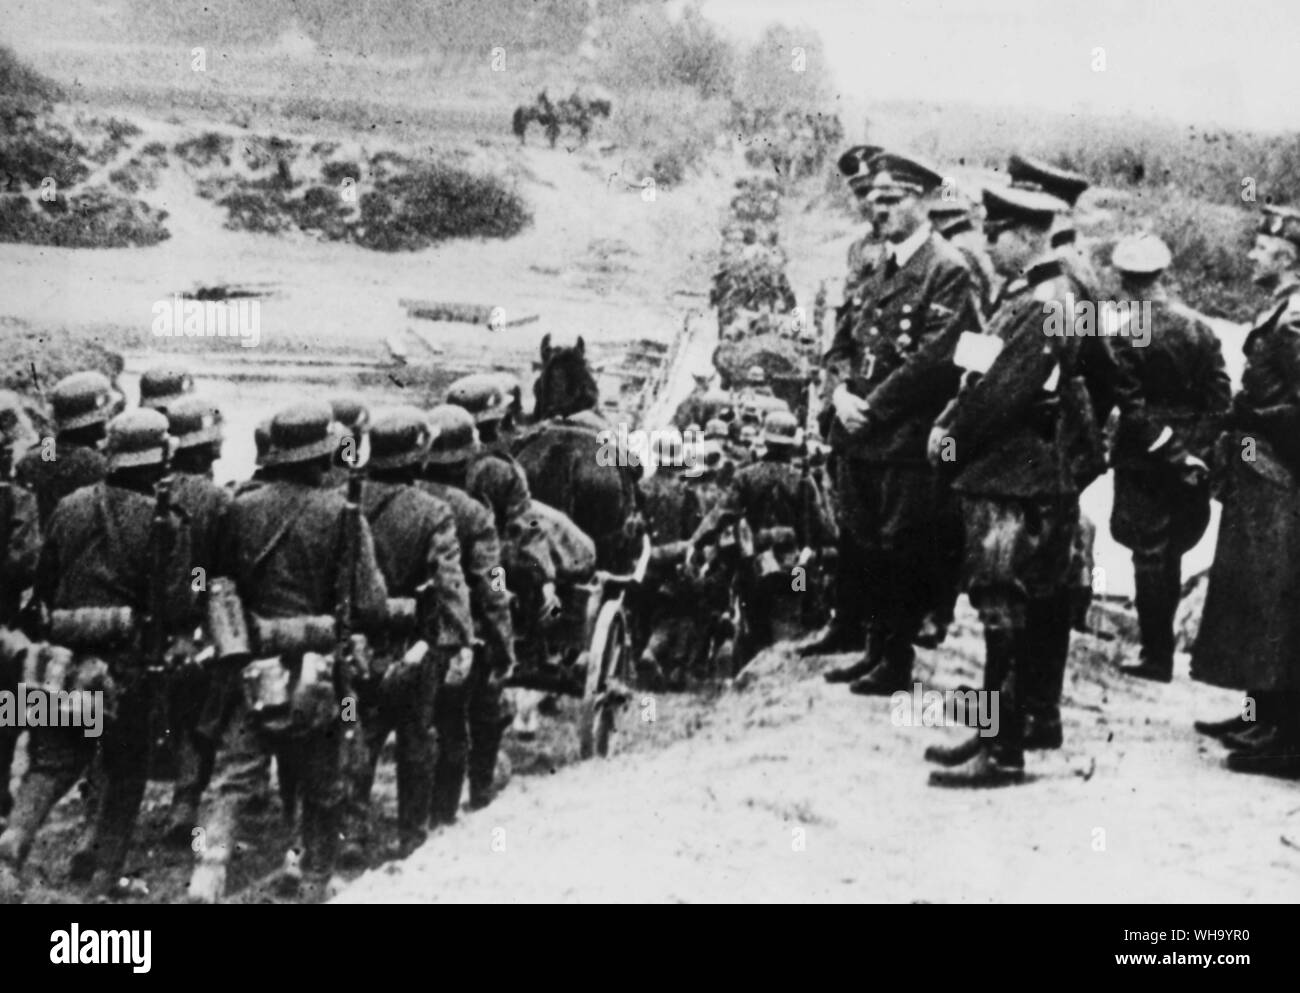 WW2 : Hitler et d'autres hauts officiers allemands regarder les longues files de soldats nazis marchant dans la boue de la Pologne après l'Allemagne attaqua la Pologne dans la matinée du 1er septembre 1939. Deux jours plus tard l'Angleterre et la France, pour s'acquitter de leur promesse d'aide à la Pologne, a déclaré la guerre à l'état nazi et le conflit était en cours. Banque D'Images